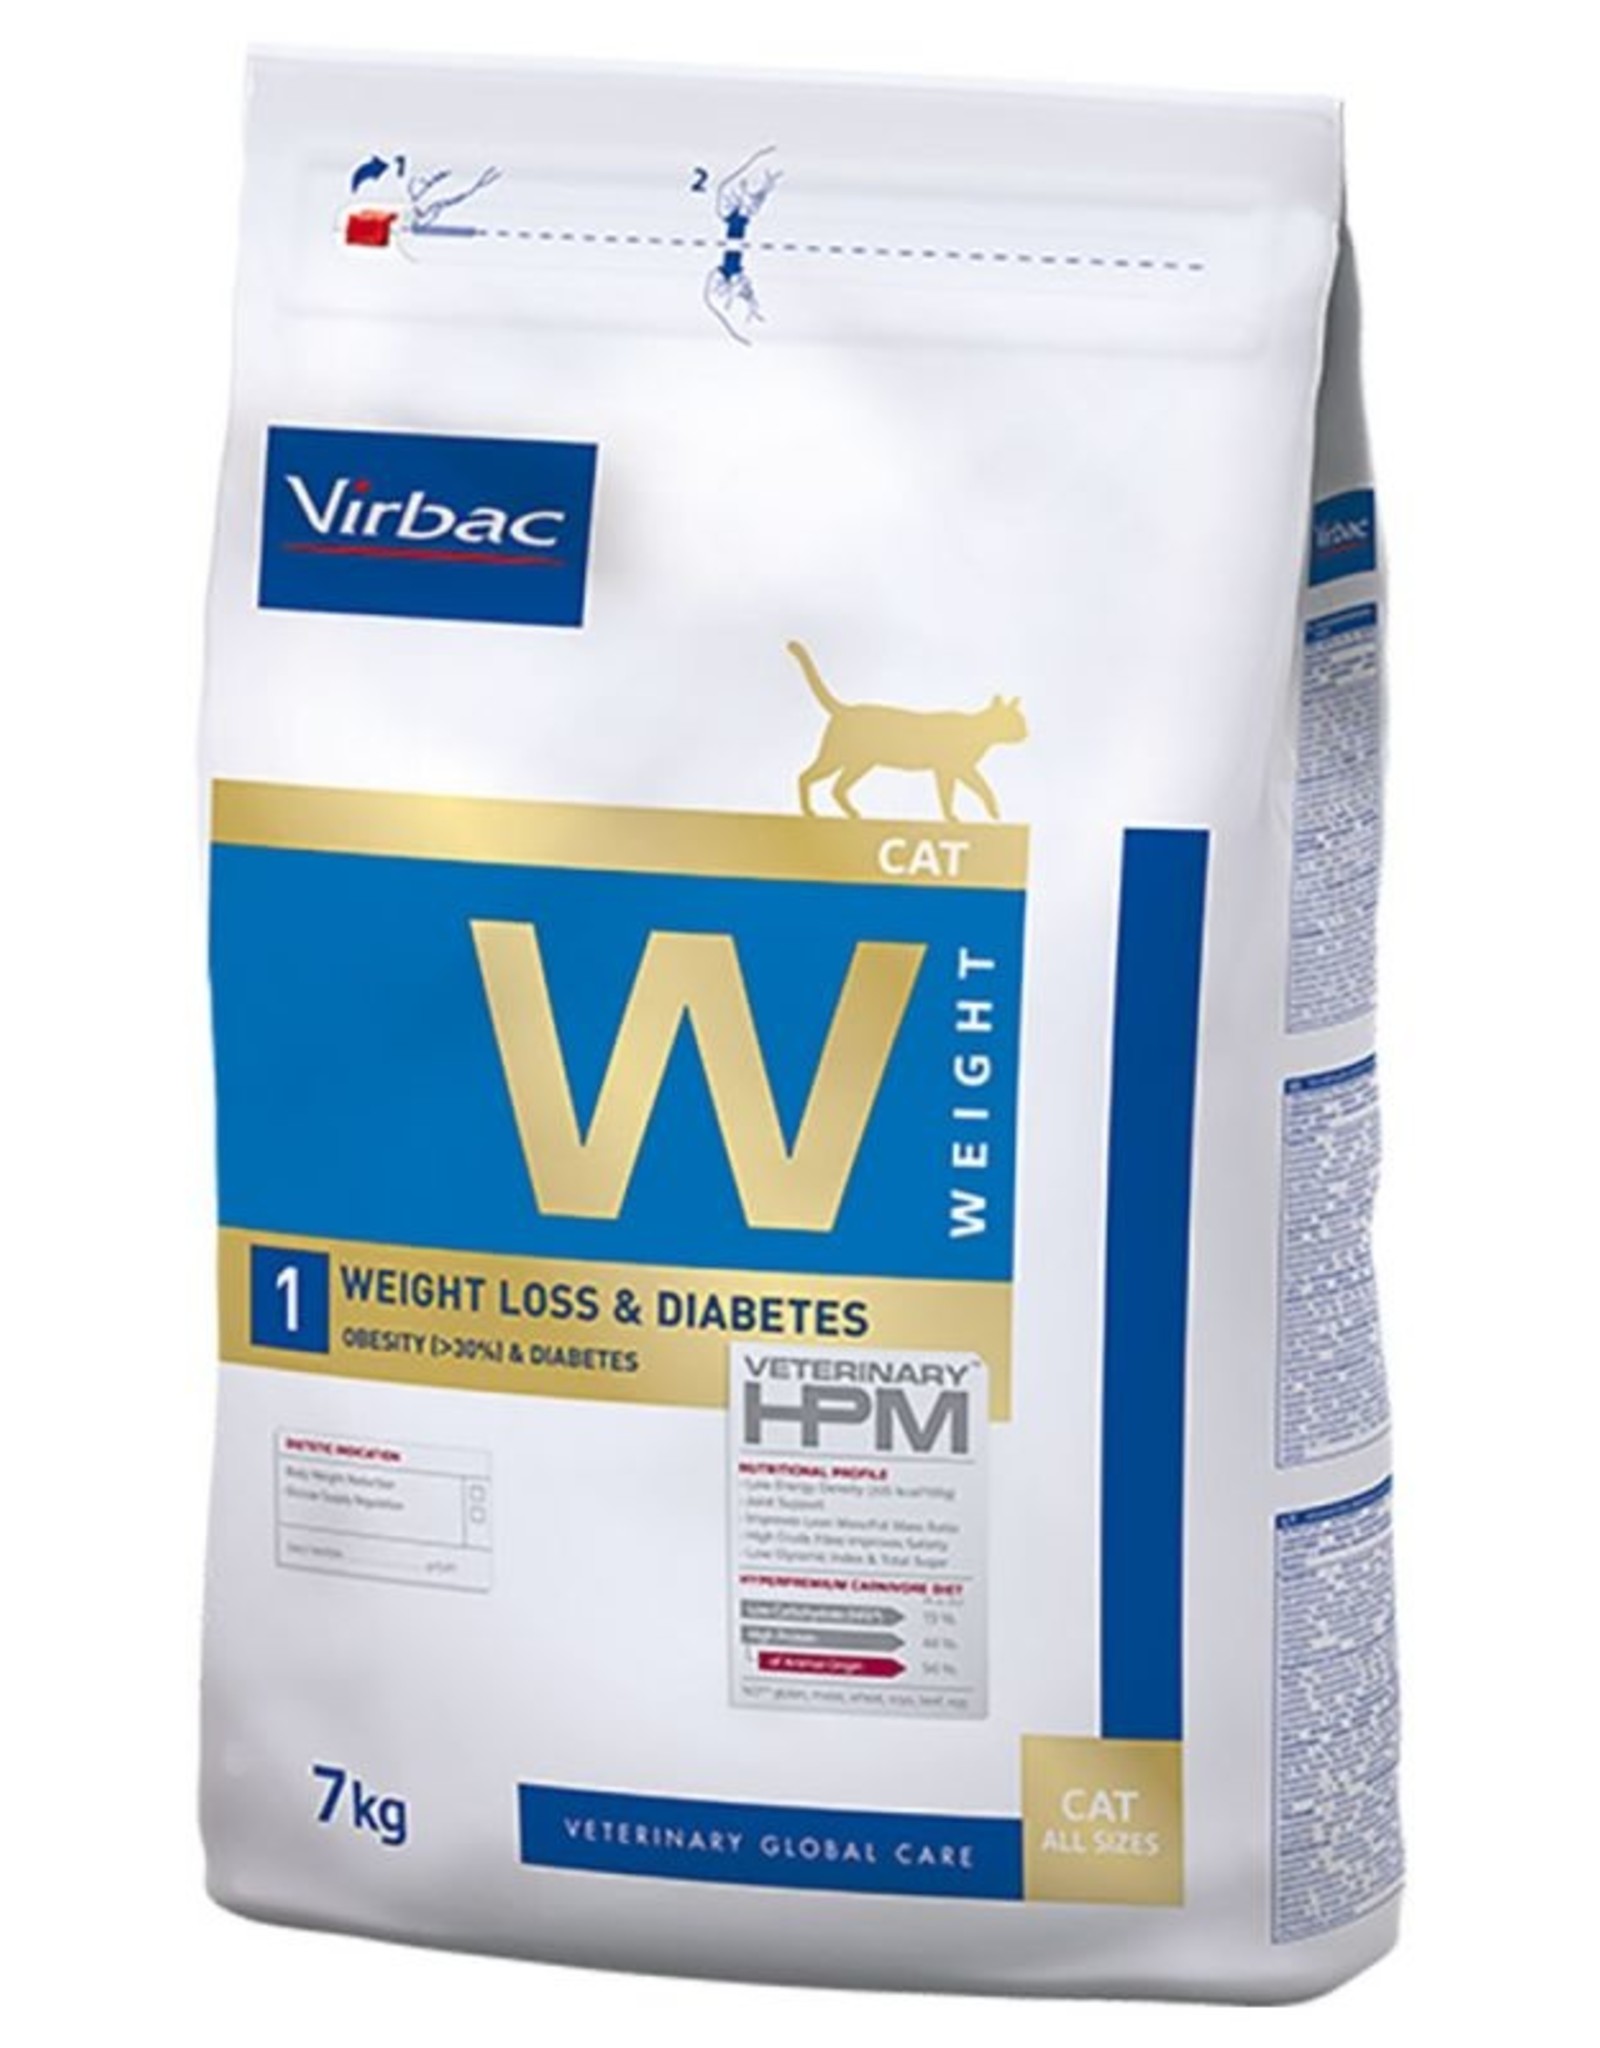 Virbac Virbac Hpm Cat Weight Loss/diabetic W1 7kg